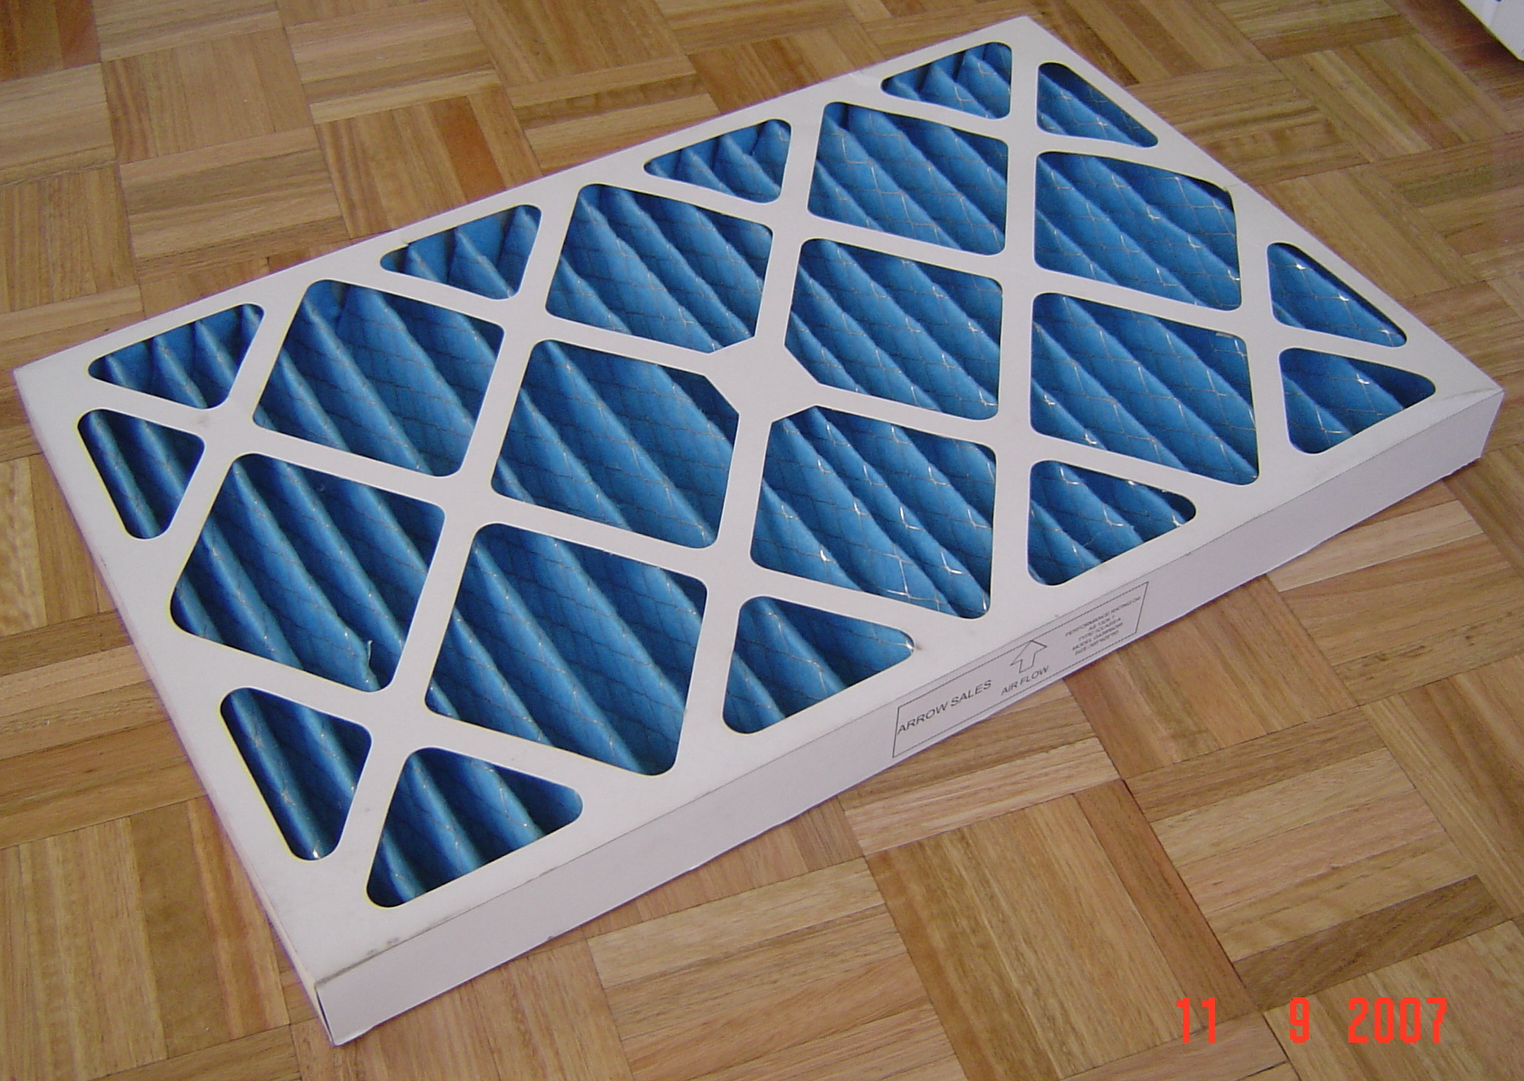 100mm Cardboard Filter 495(20)x495(20)  